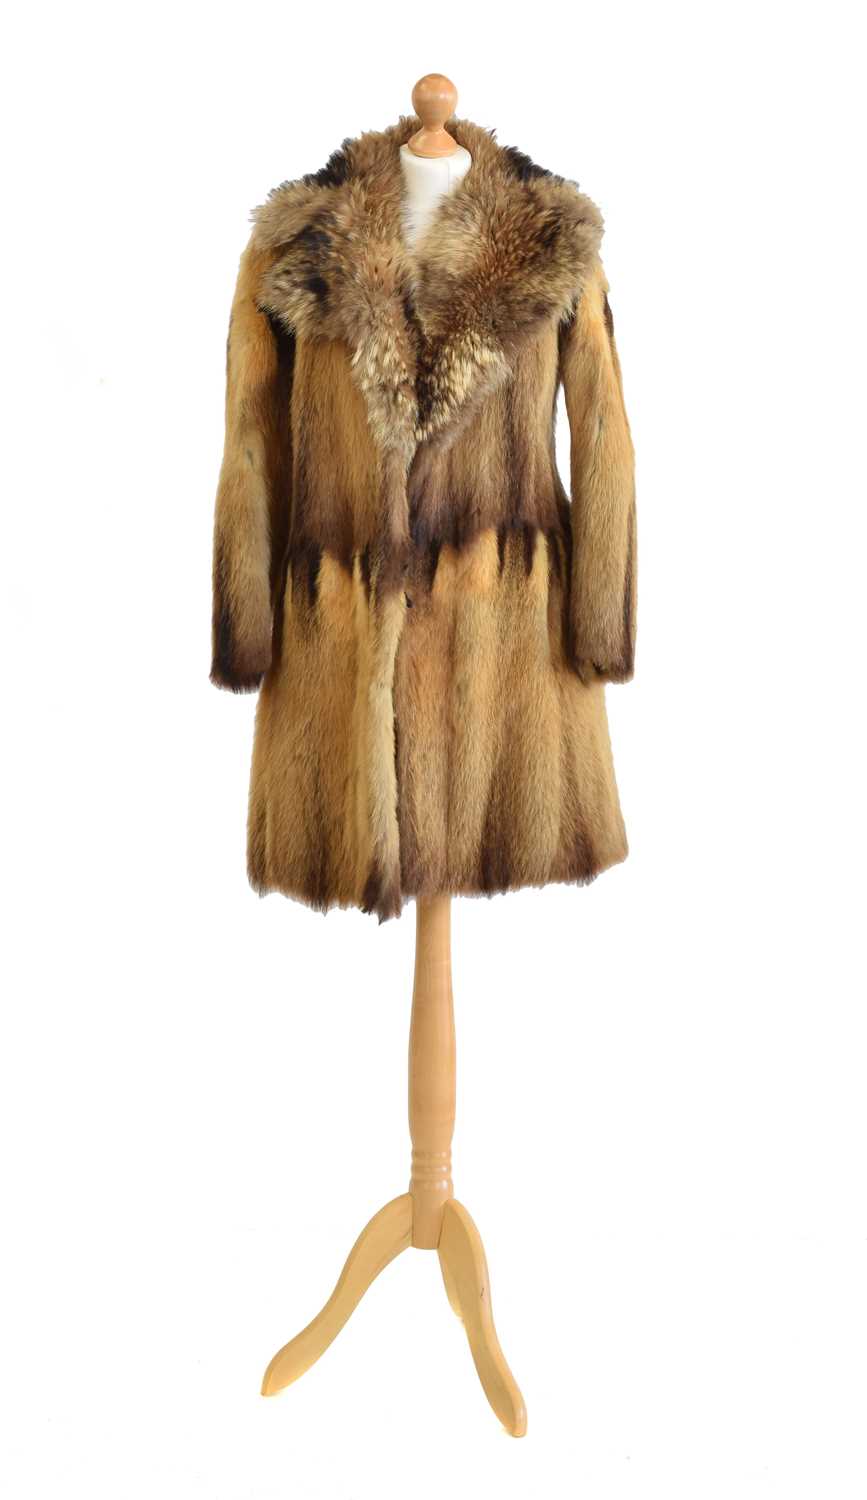 Lot 58 - A fur coat